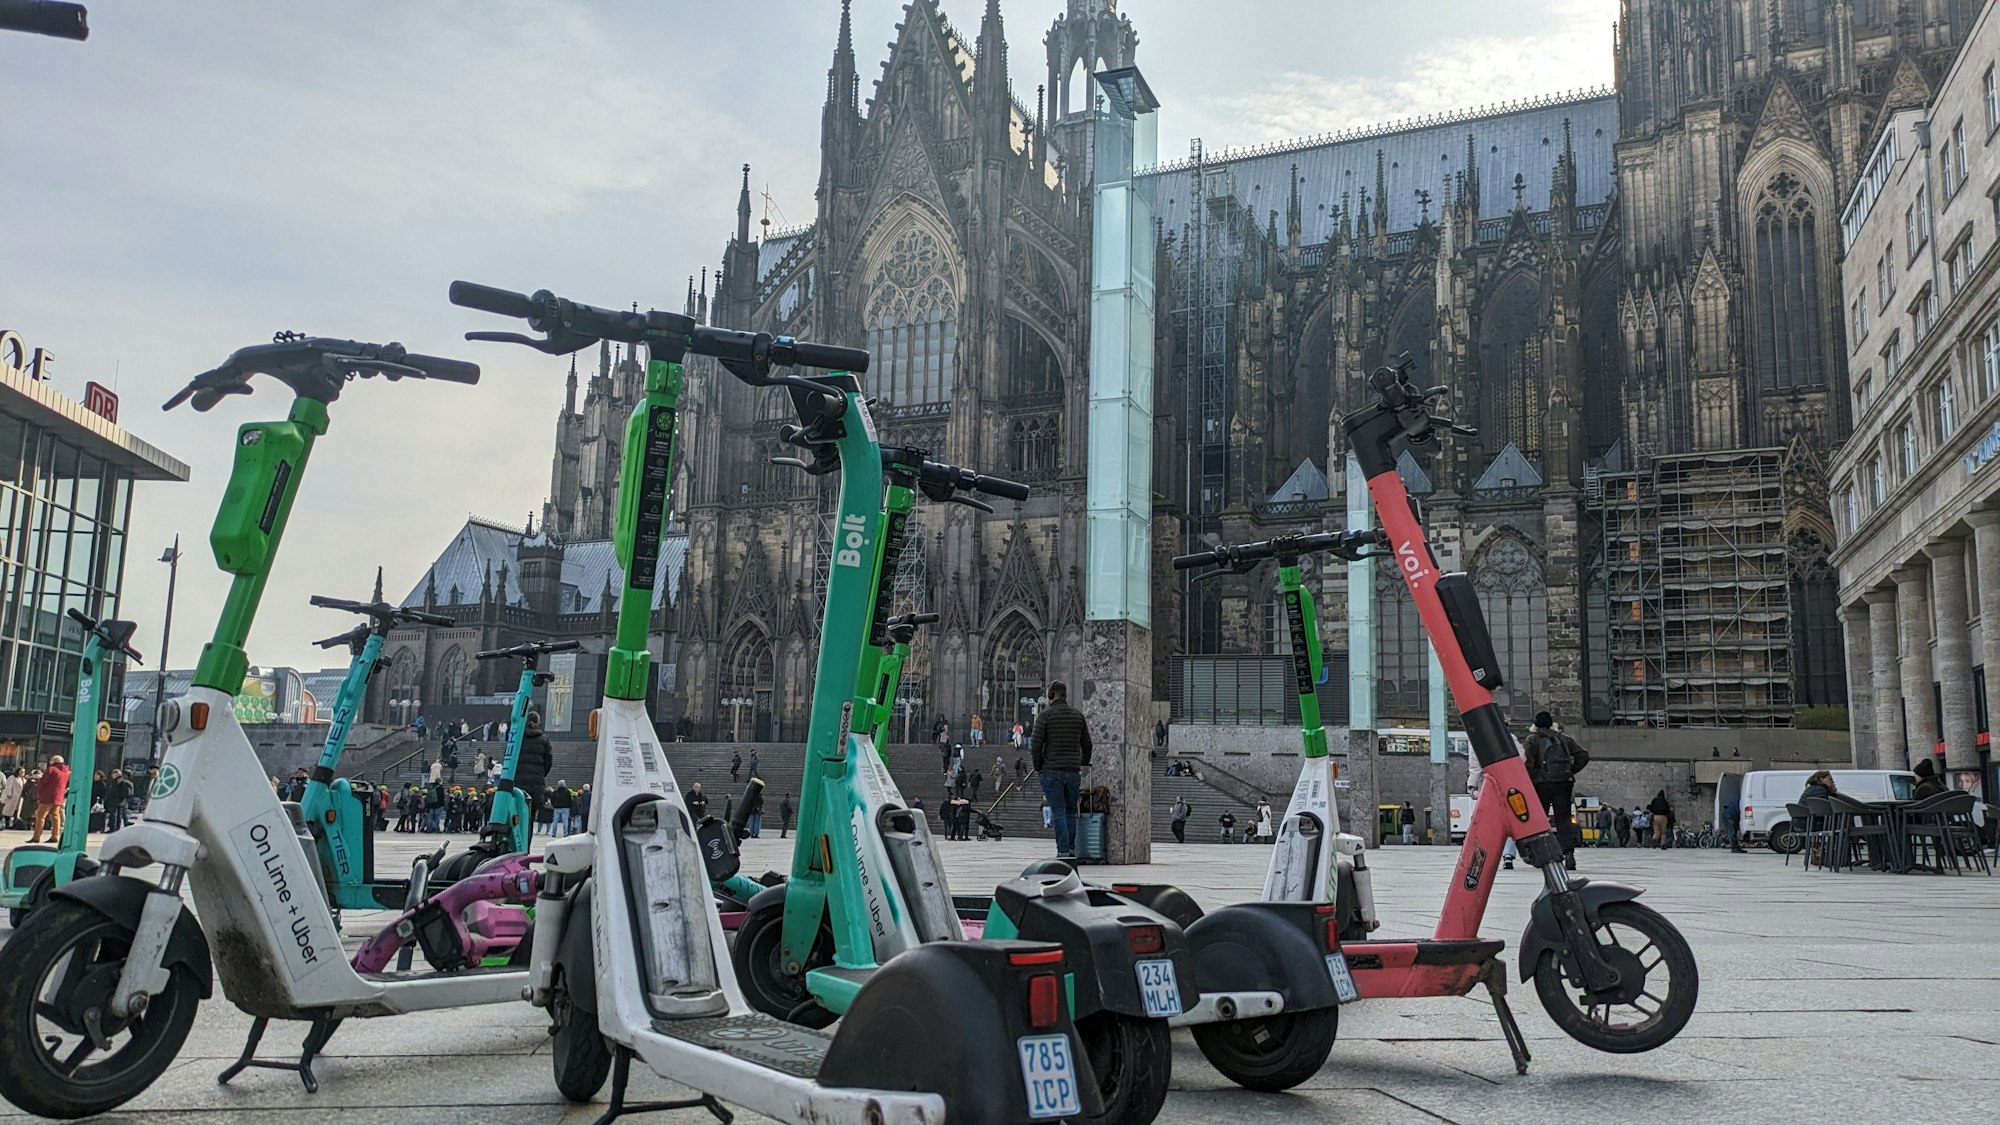 Viele Nutzer stellen die E-Scooter am Kölner Hauptbahnhof völlig chaotisch ab.